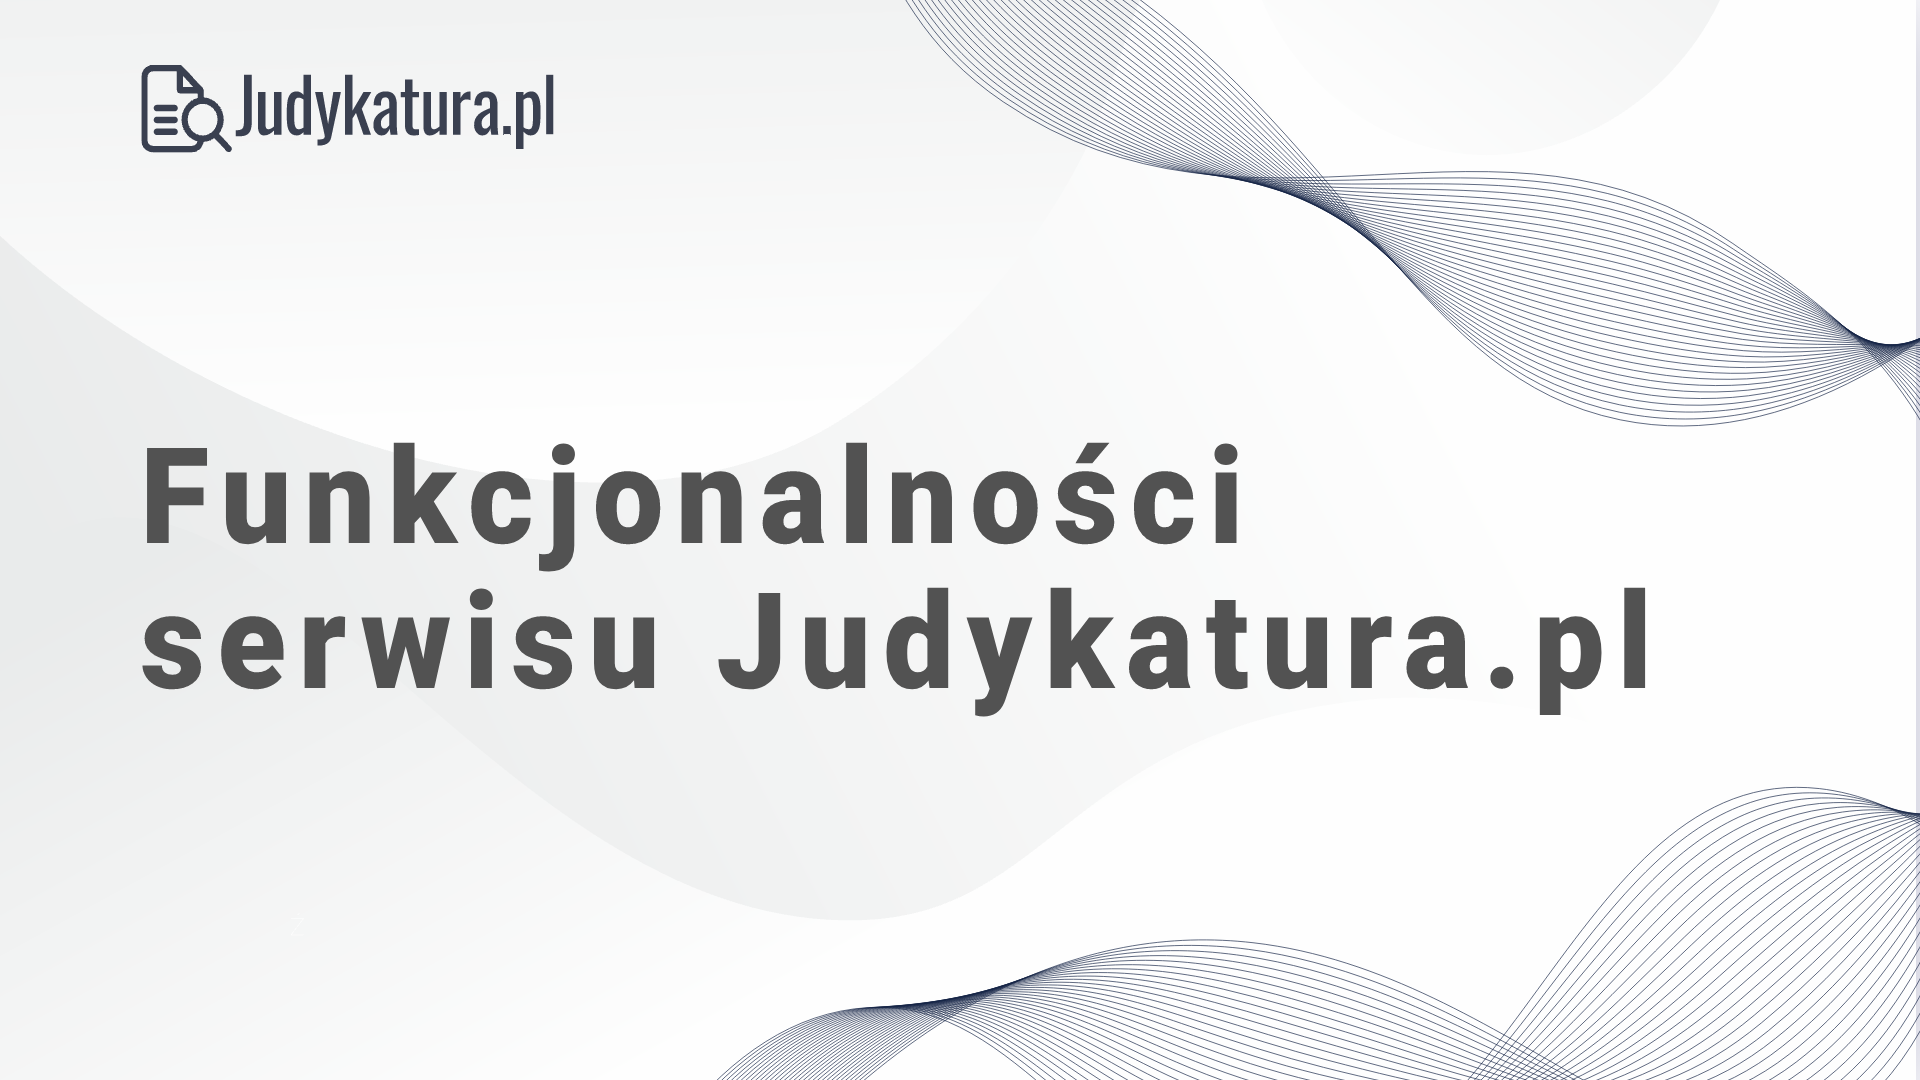 Funkcjonalności serwisu Judykatura.pl